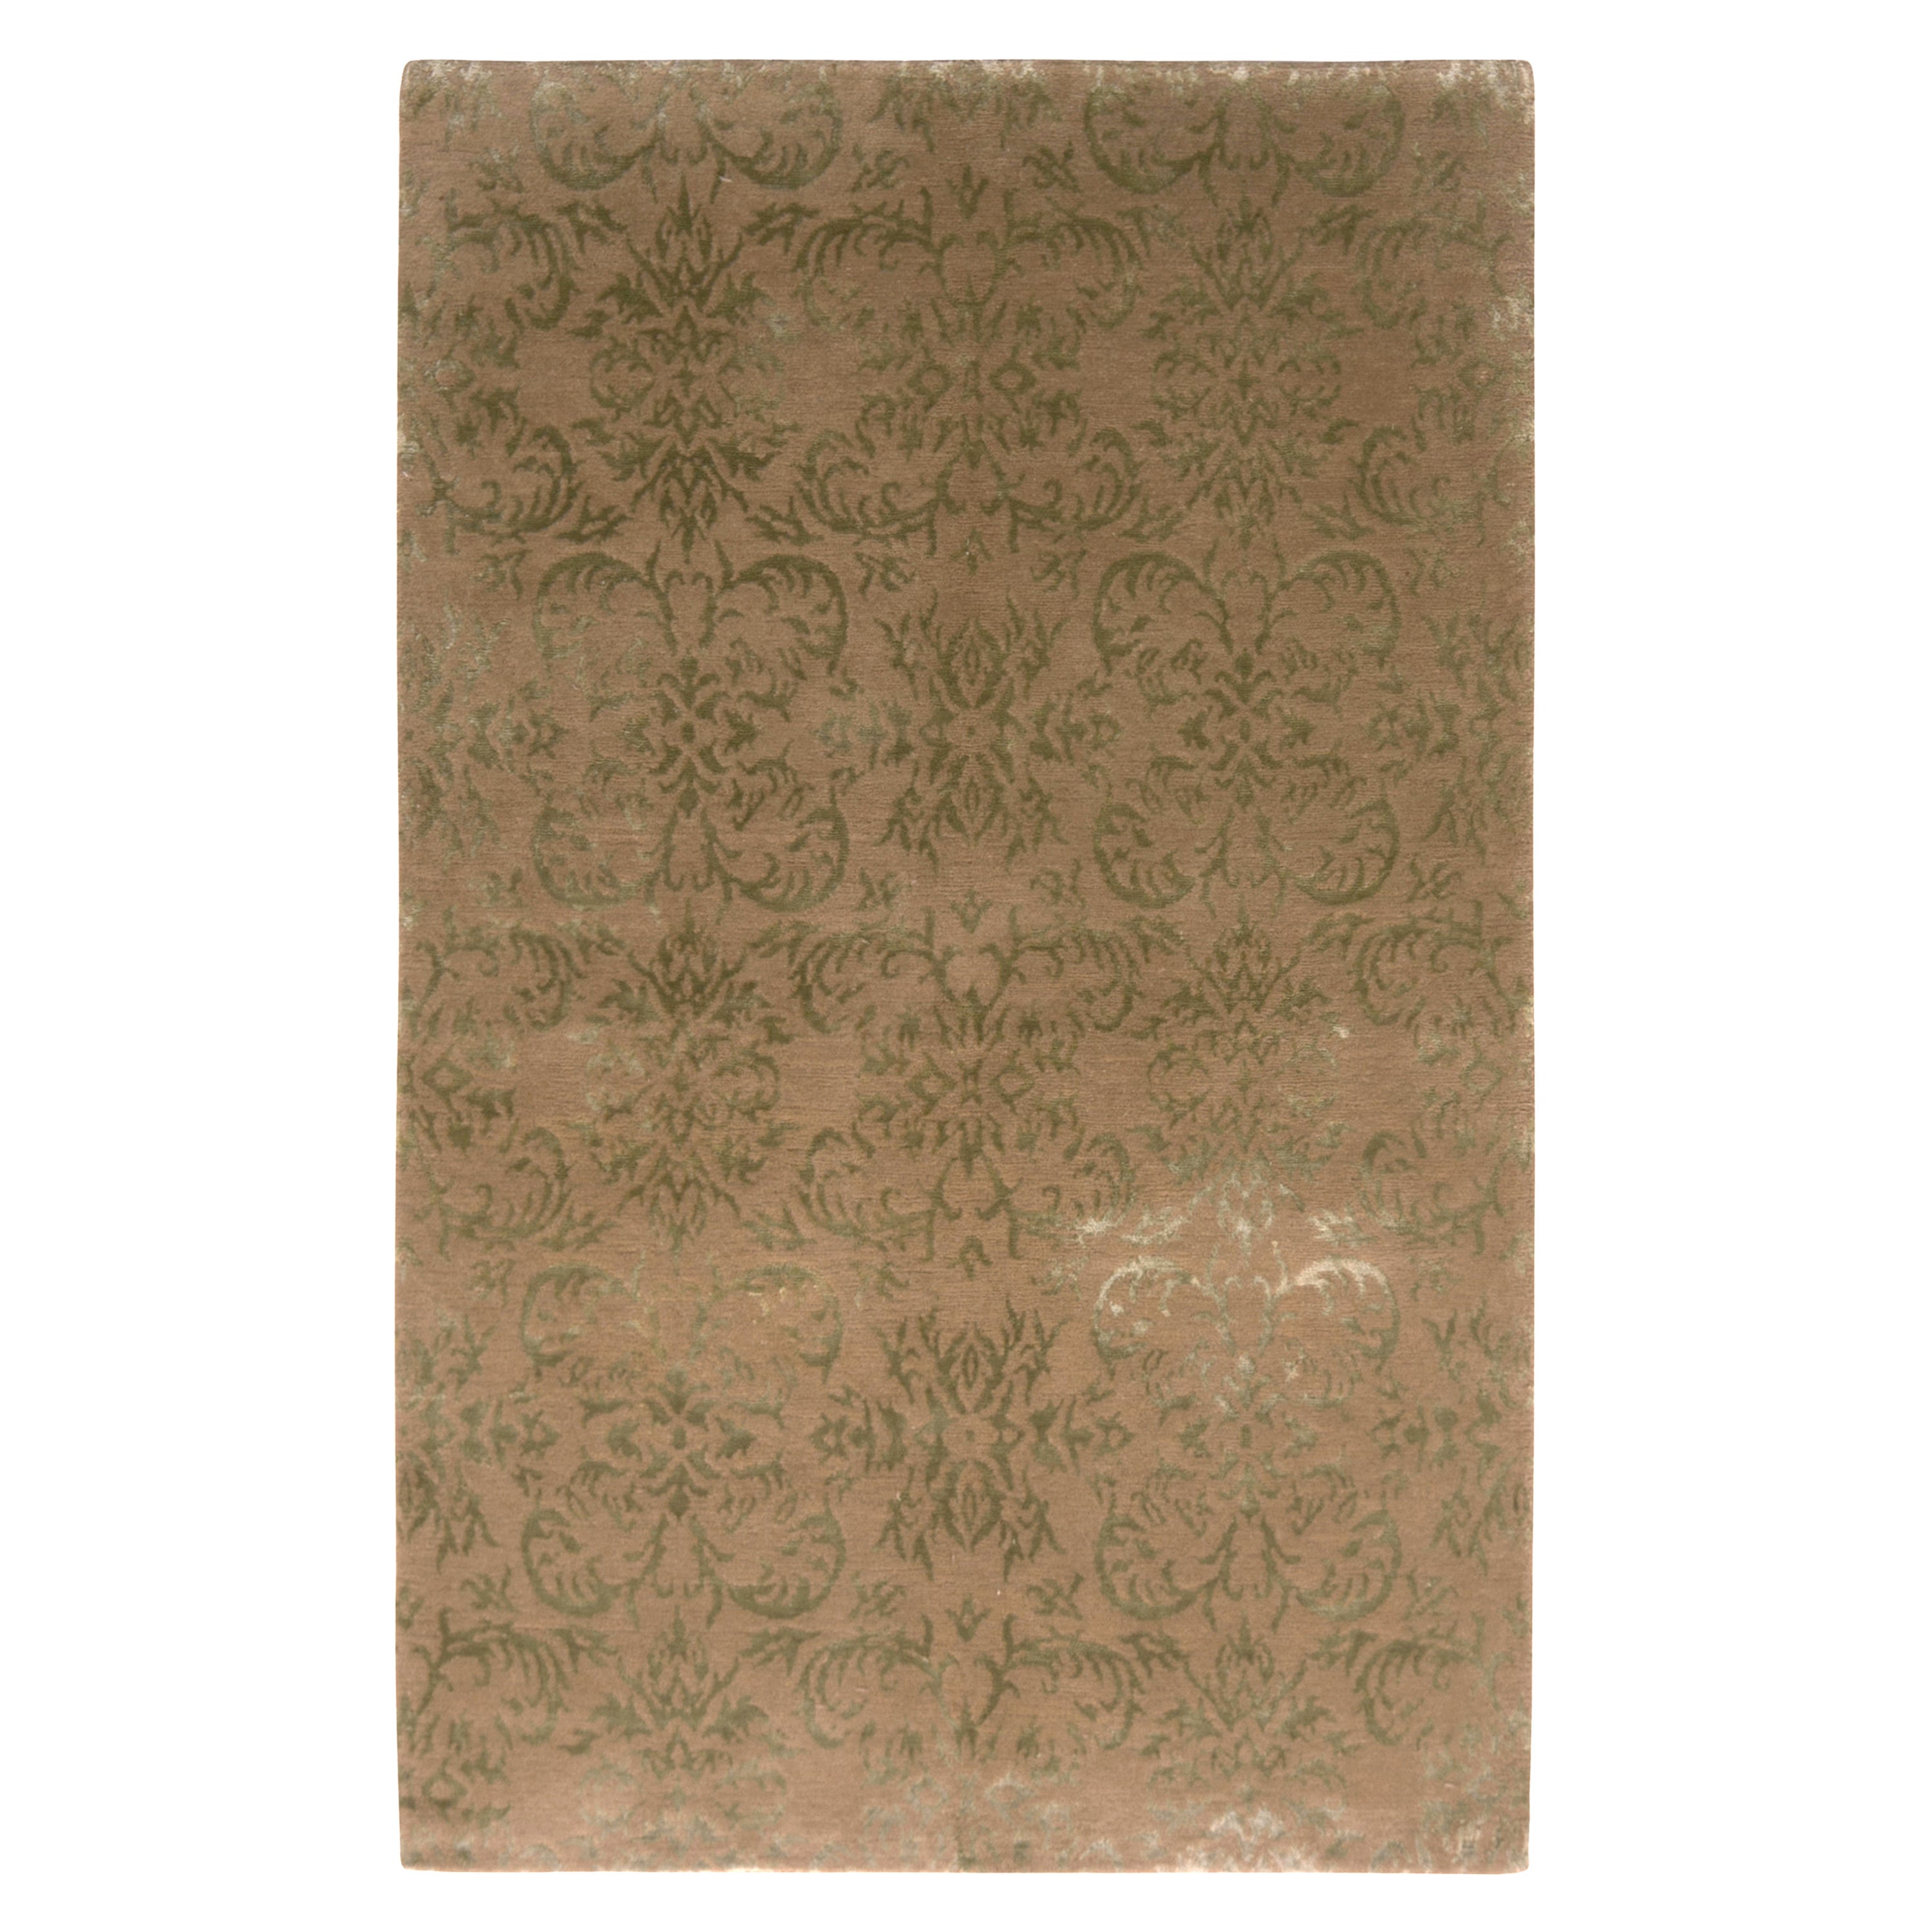 Rug & Kilim's Tapis de style européen noué à la main Beige-Brown Green Floral Pattern